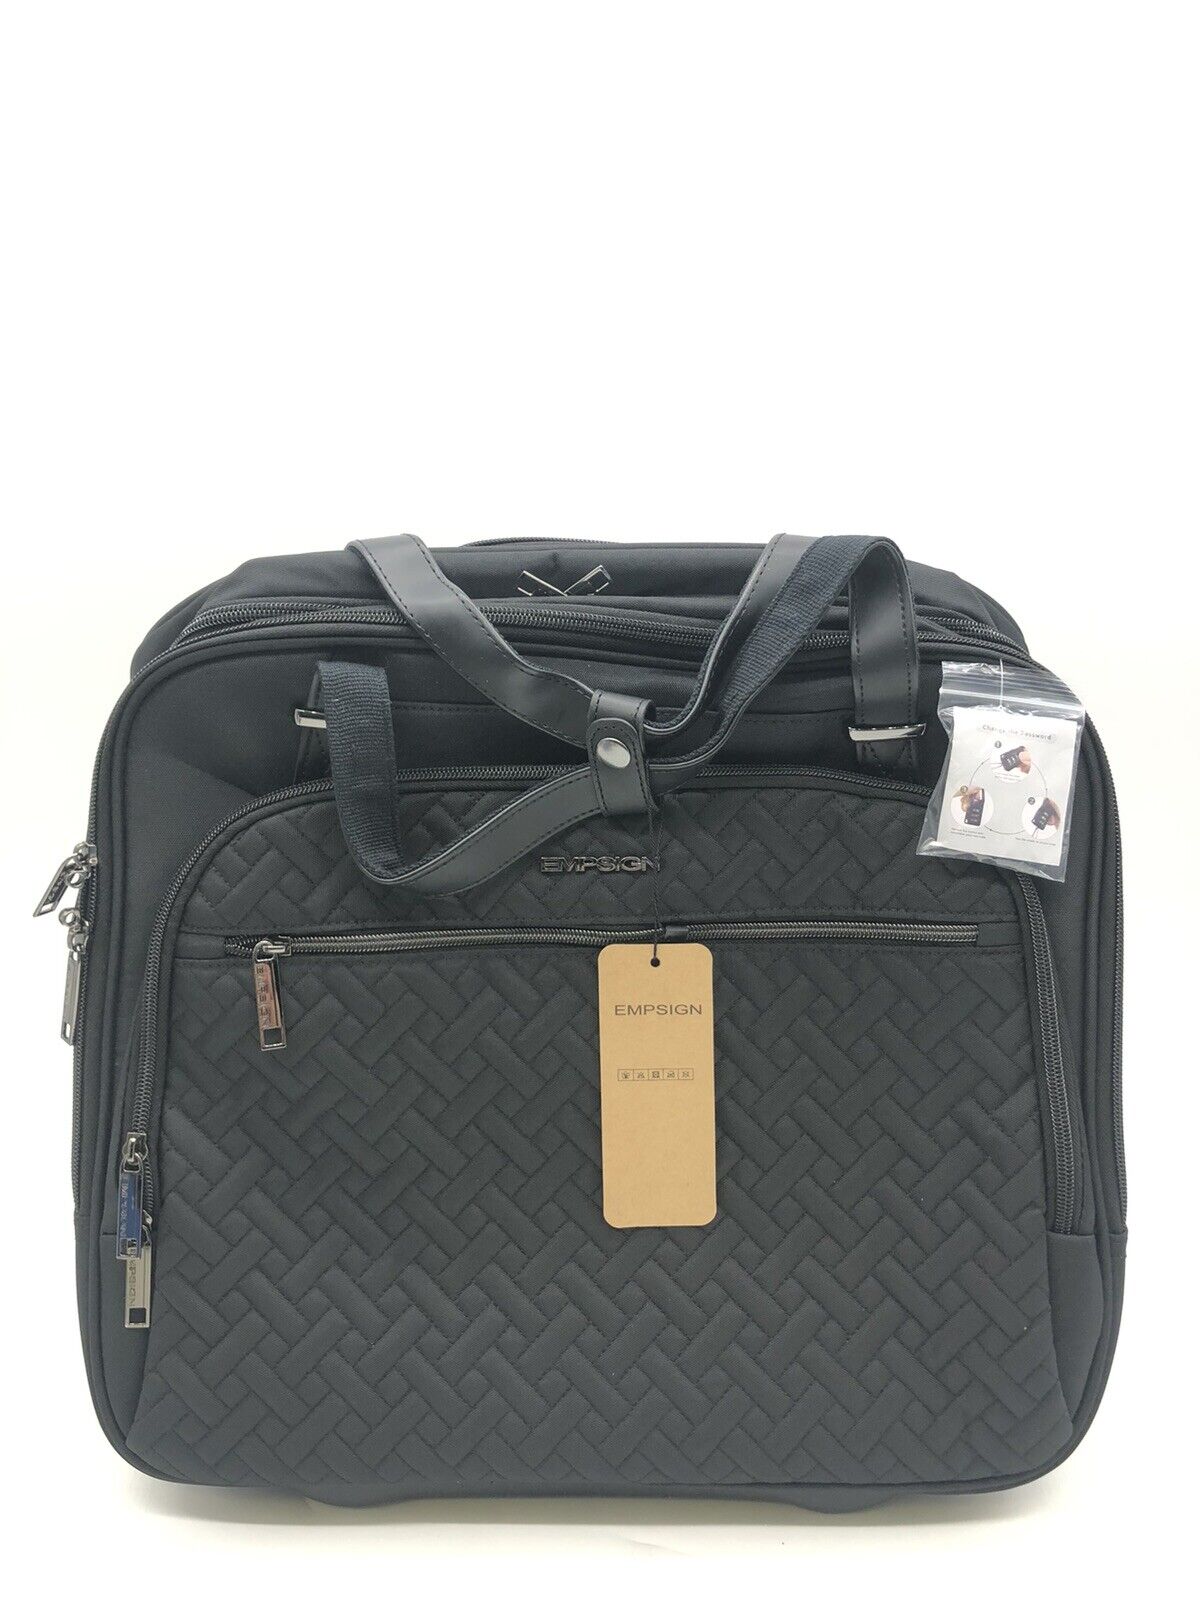 EMPSIGN Rolling Laptop Bag 15.6 Inch Roller Briefcase Black